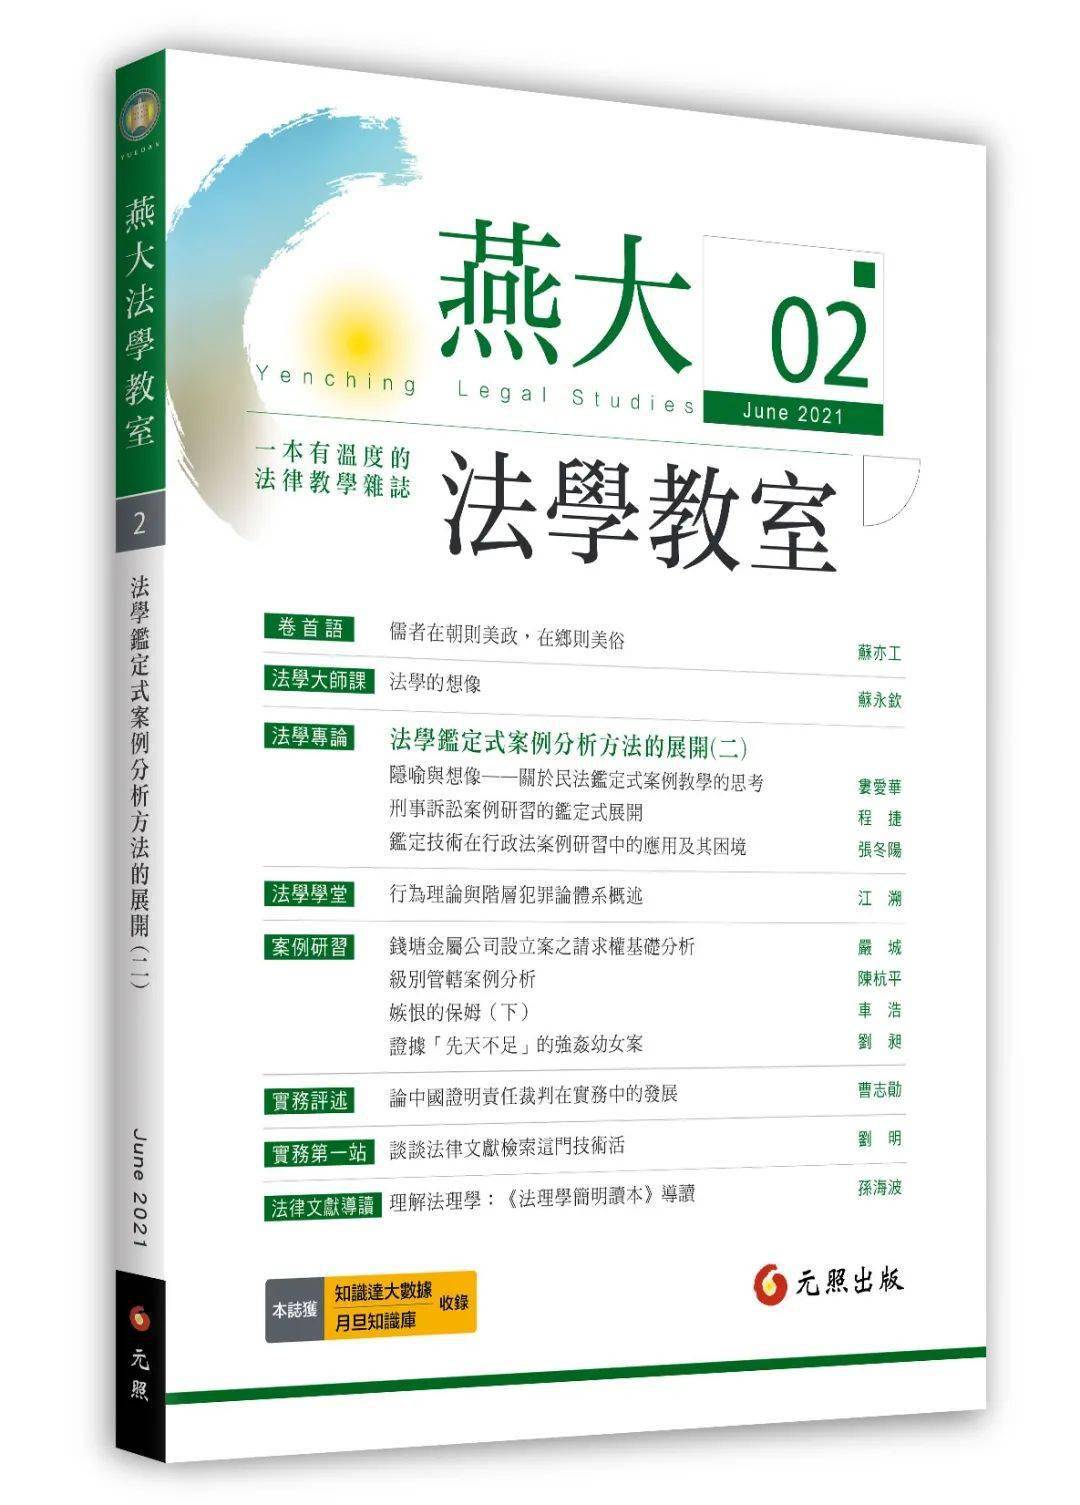 新书推荐│ 燕大法学教室第2期上市_手机搜狐网